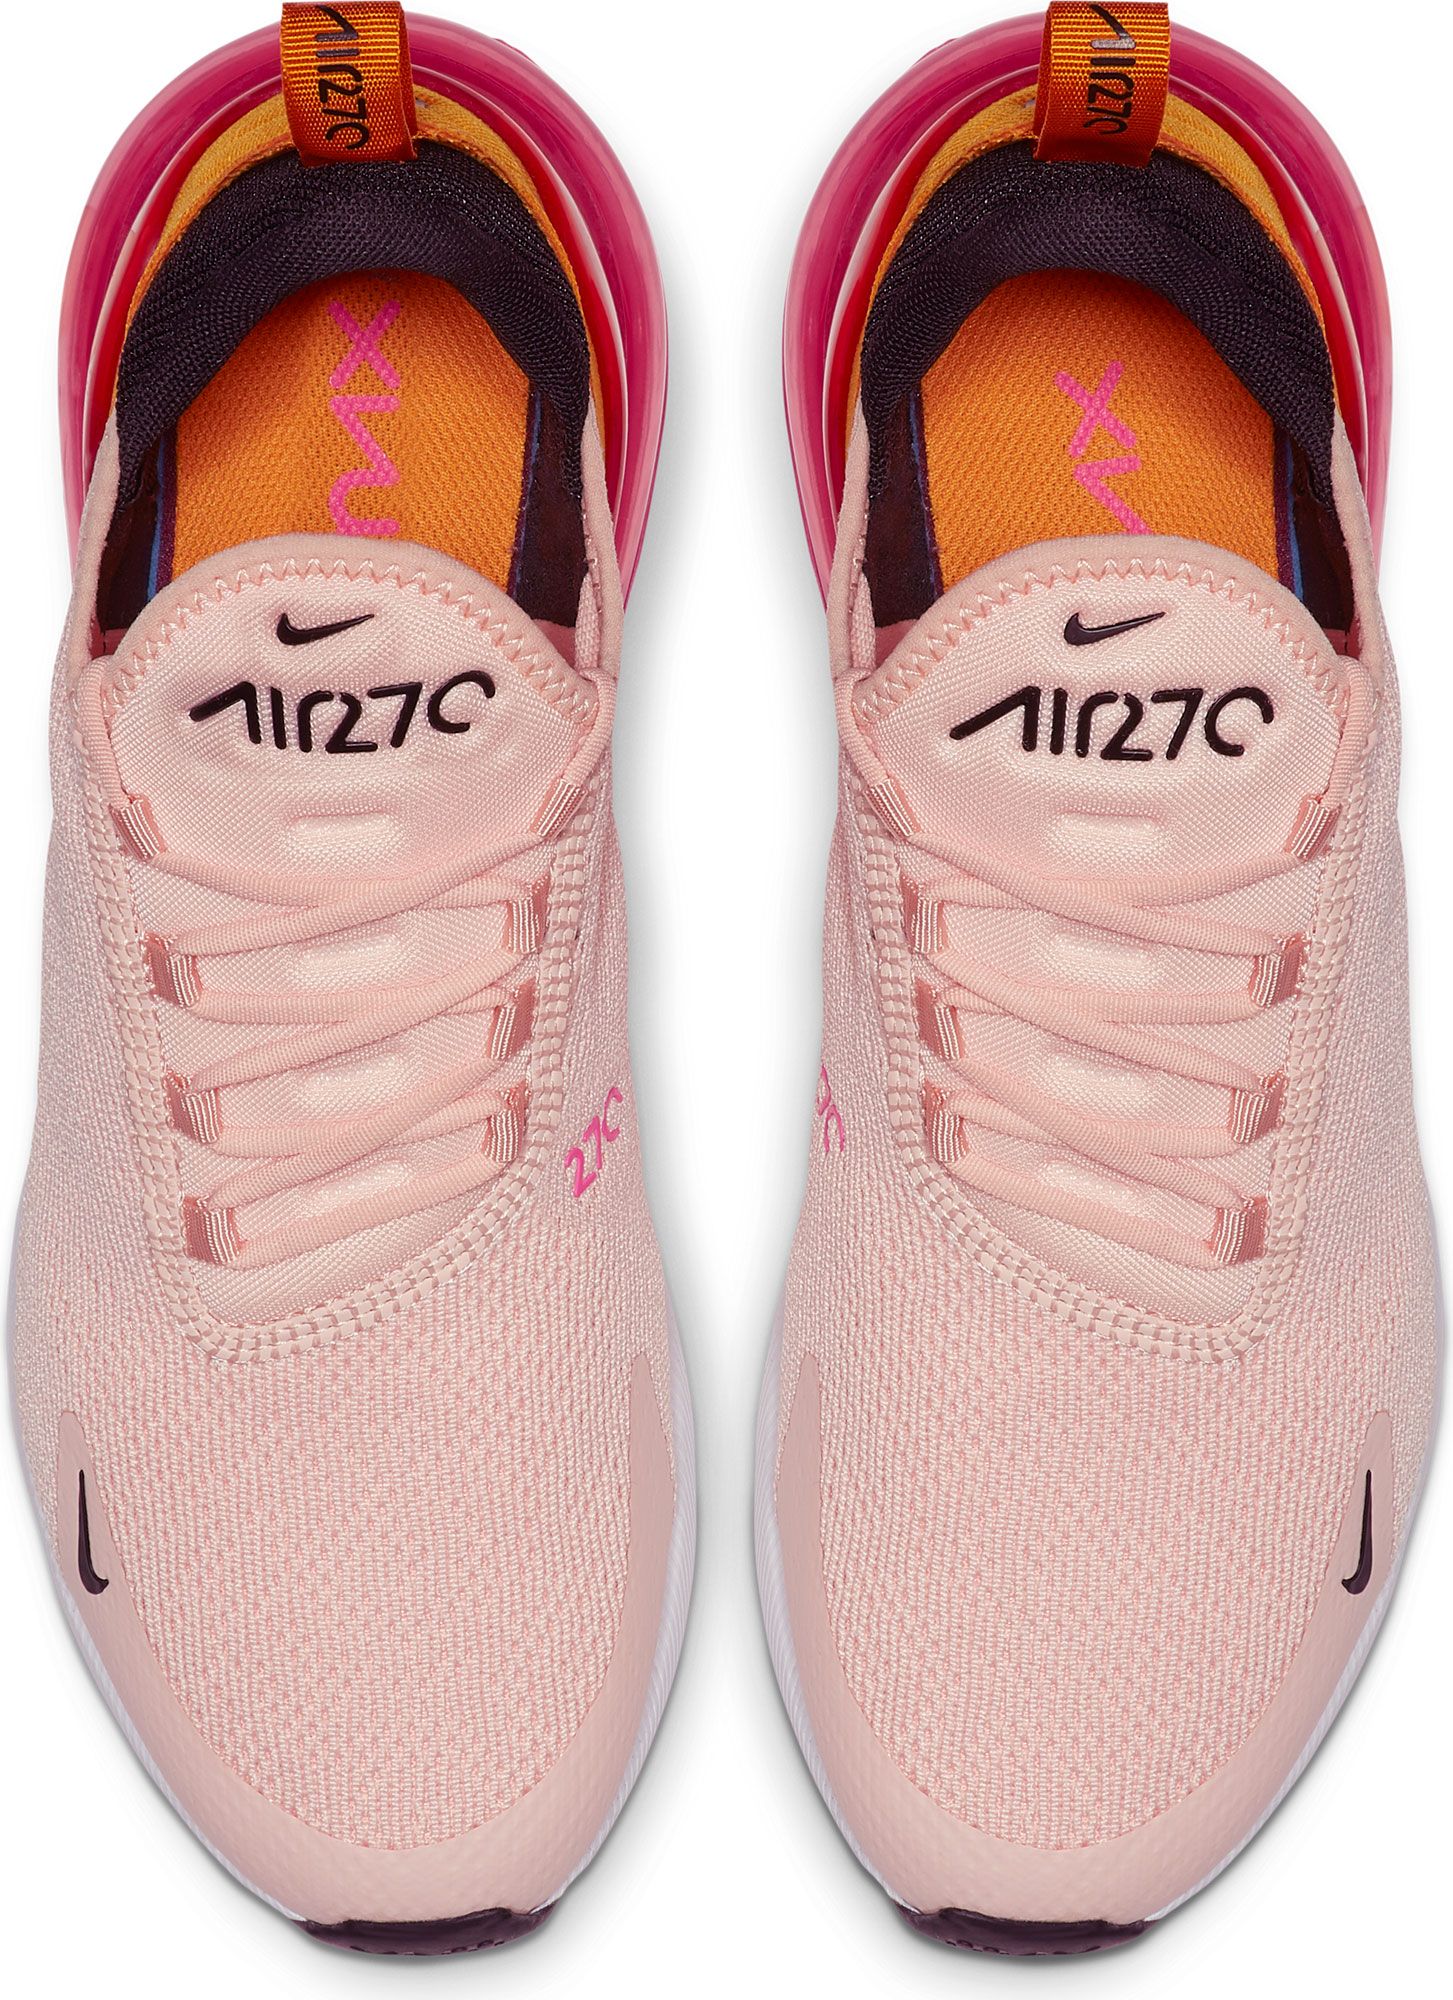 nike women's air max 270 shoes pink orange black